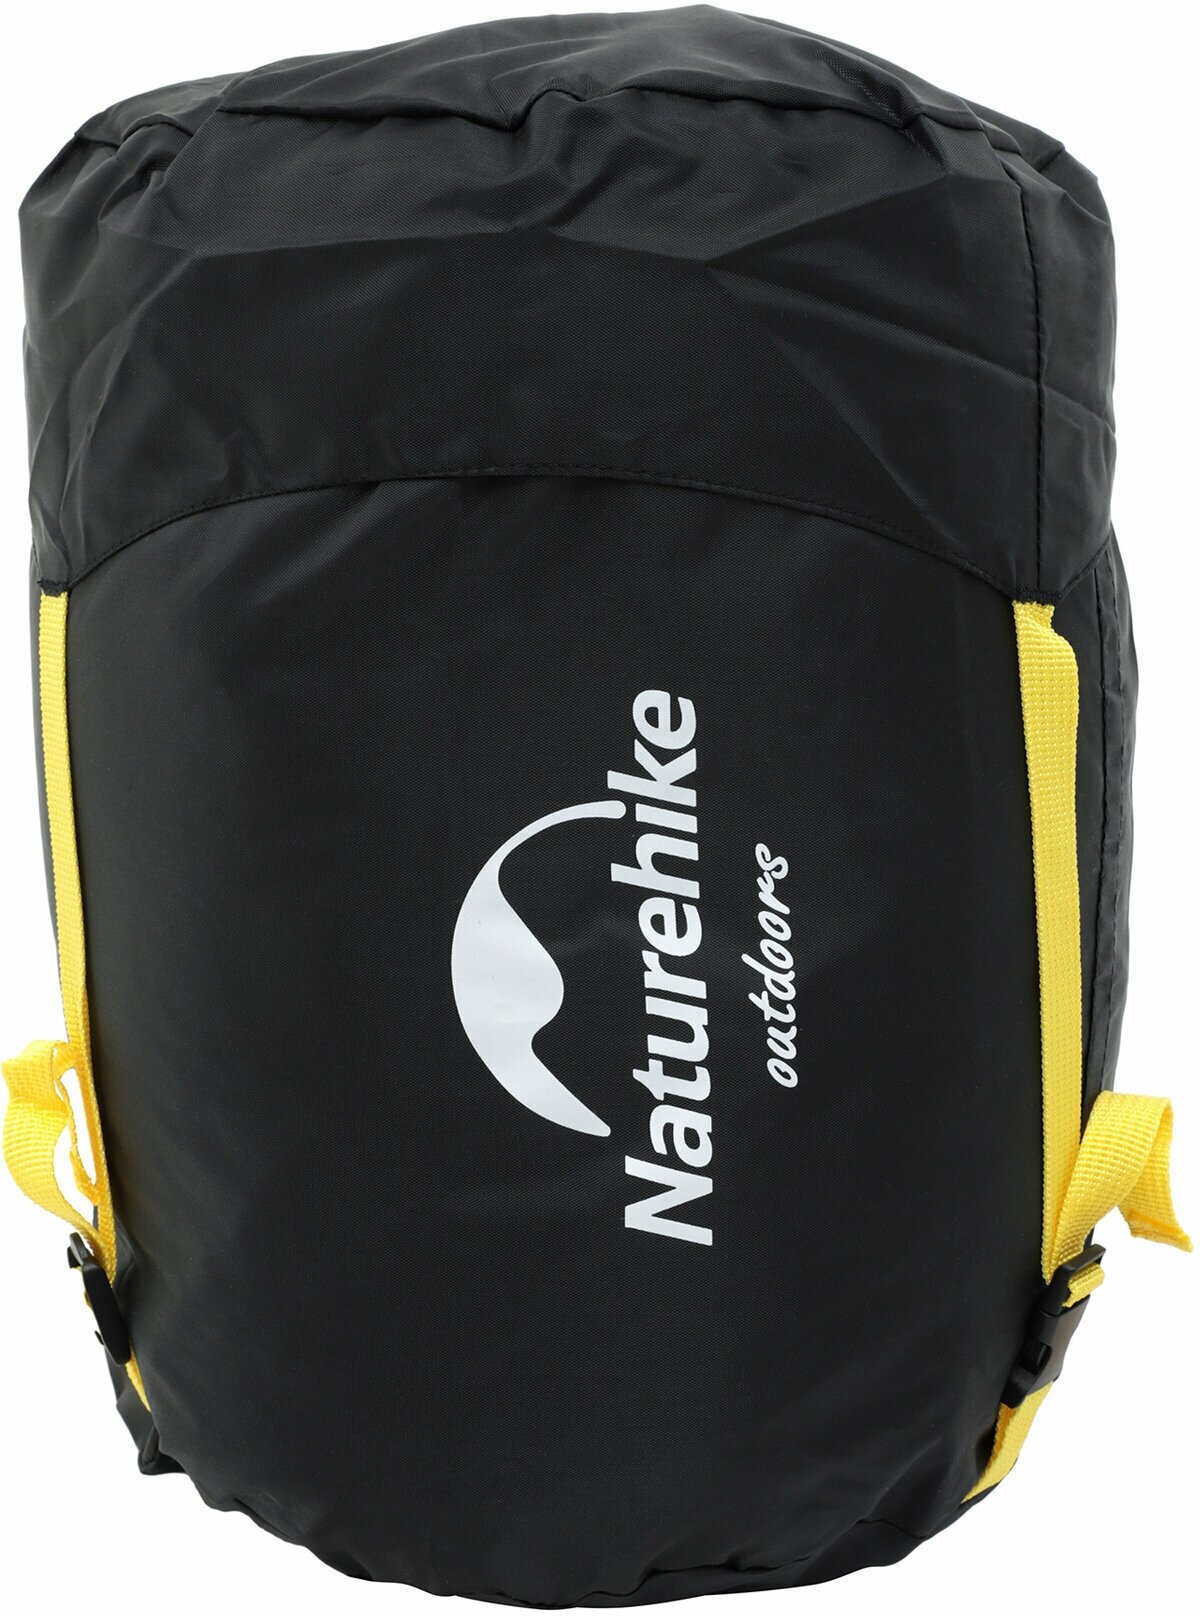 Мешок компрессионный Naturehike Compression Bag For Sleeping Bag, S Black